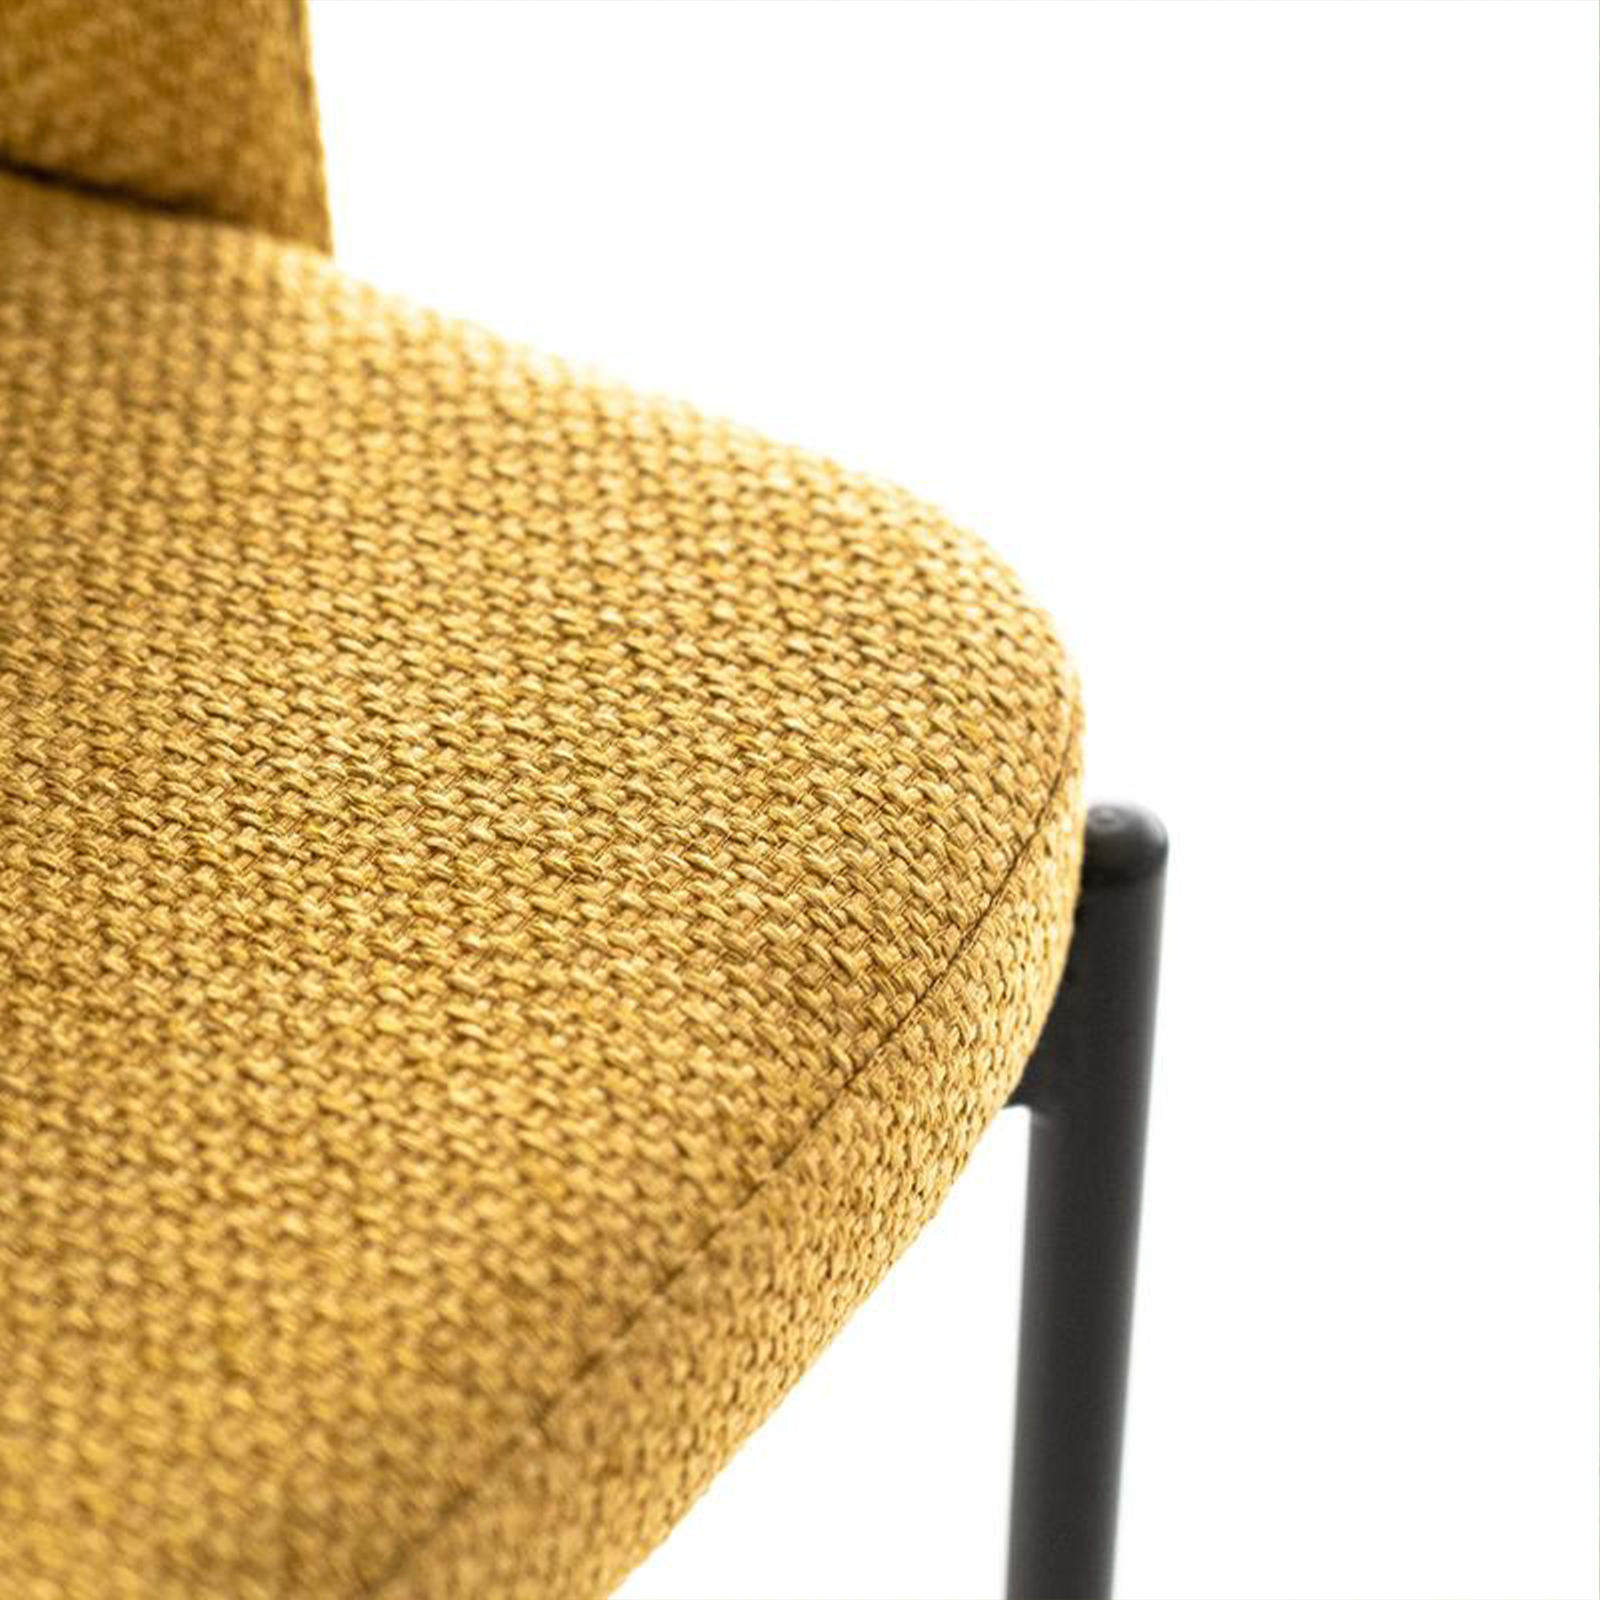 Set di sedie moderne imbottite "Erica" da pranzo in tessuto cm 56x52 78,5h